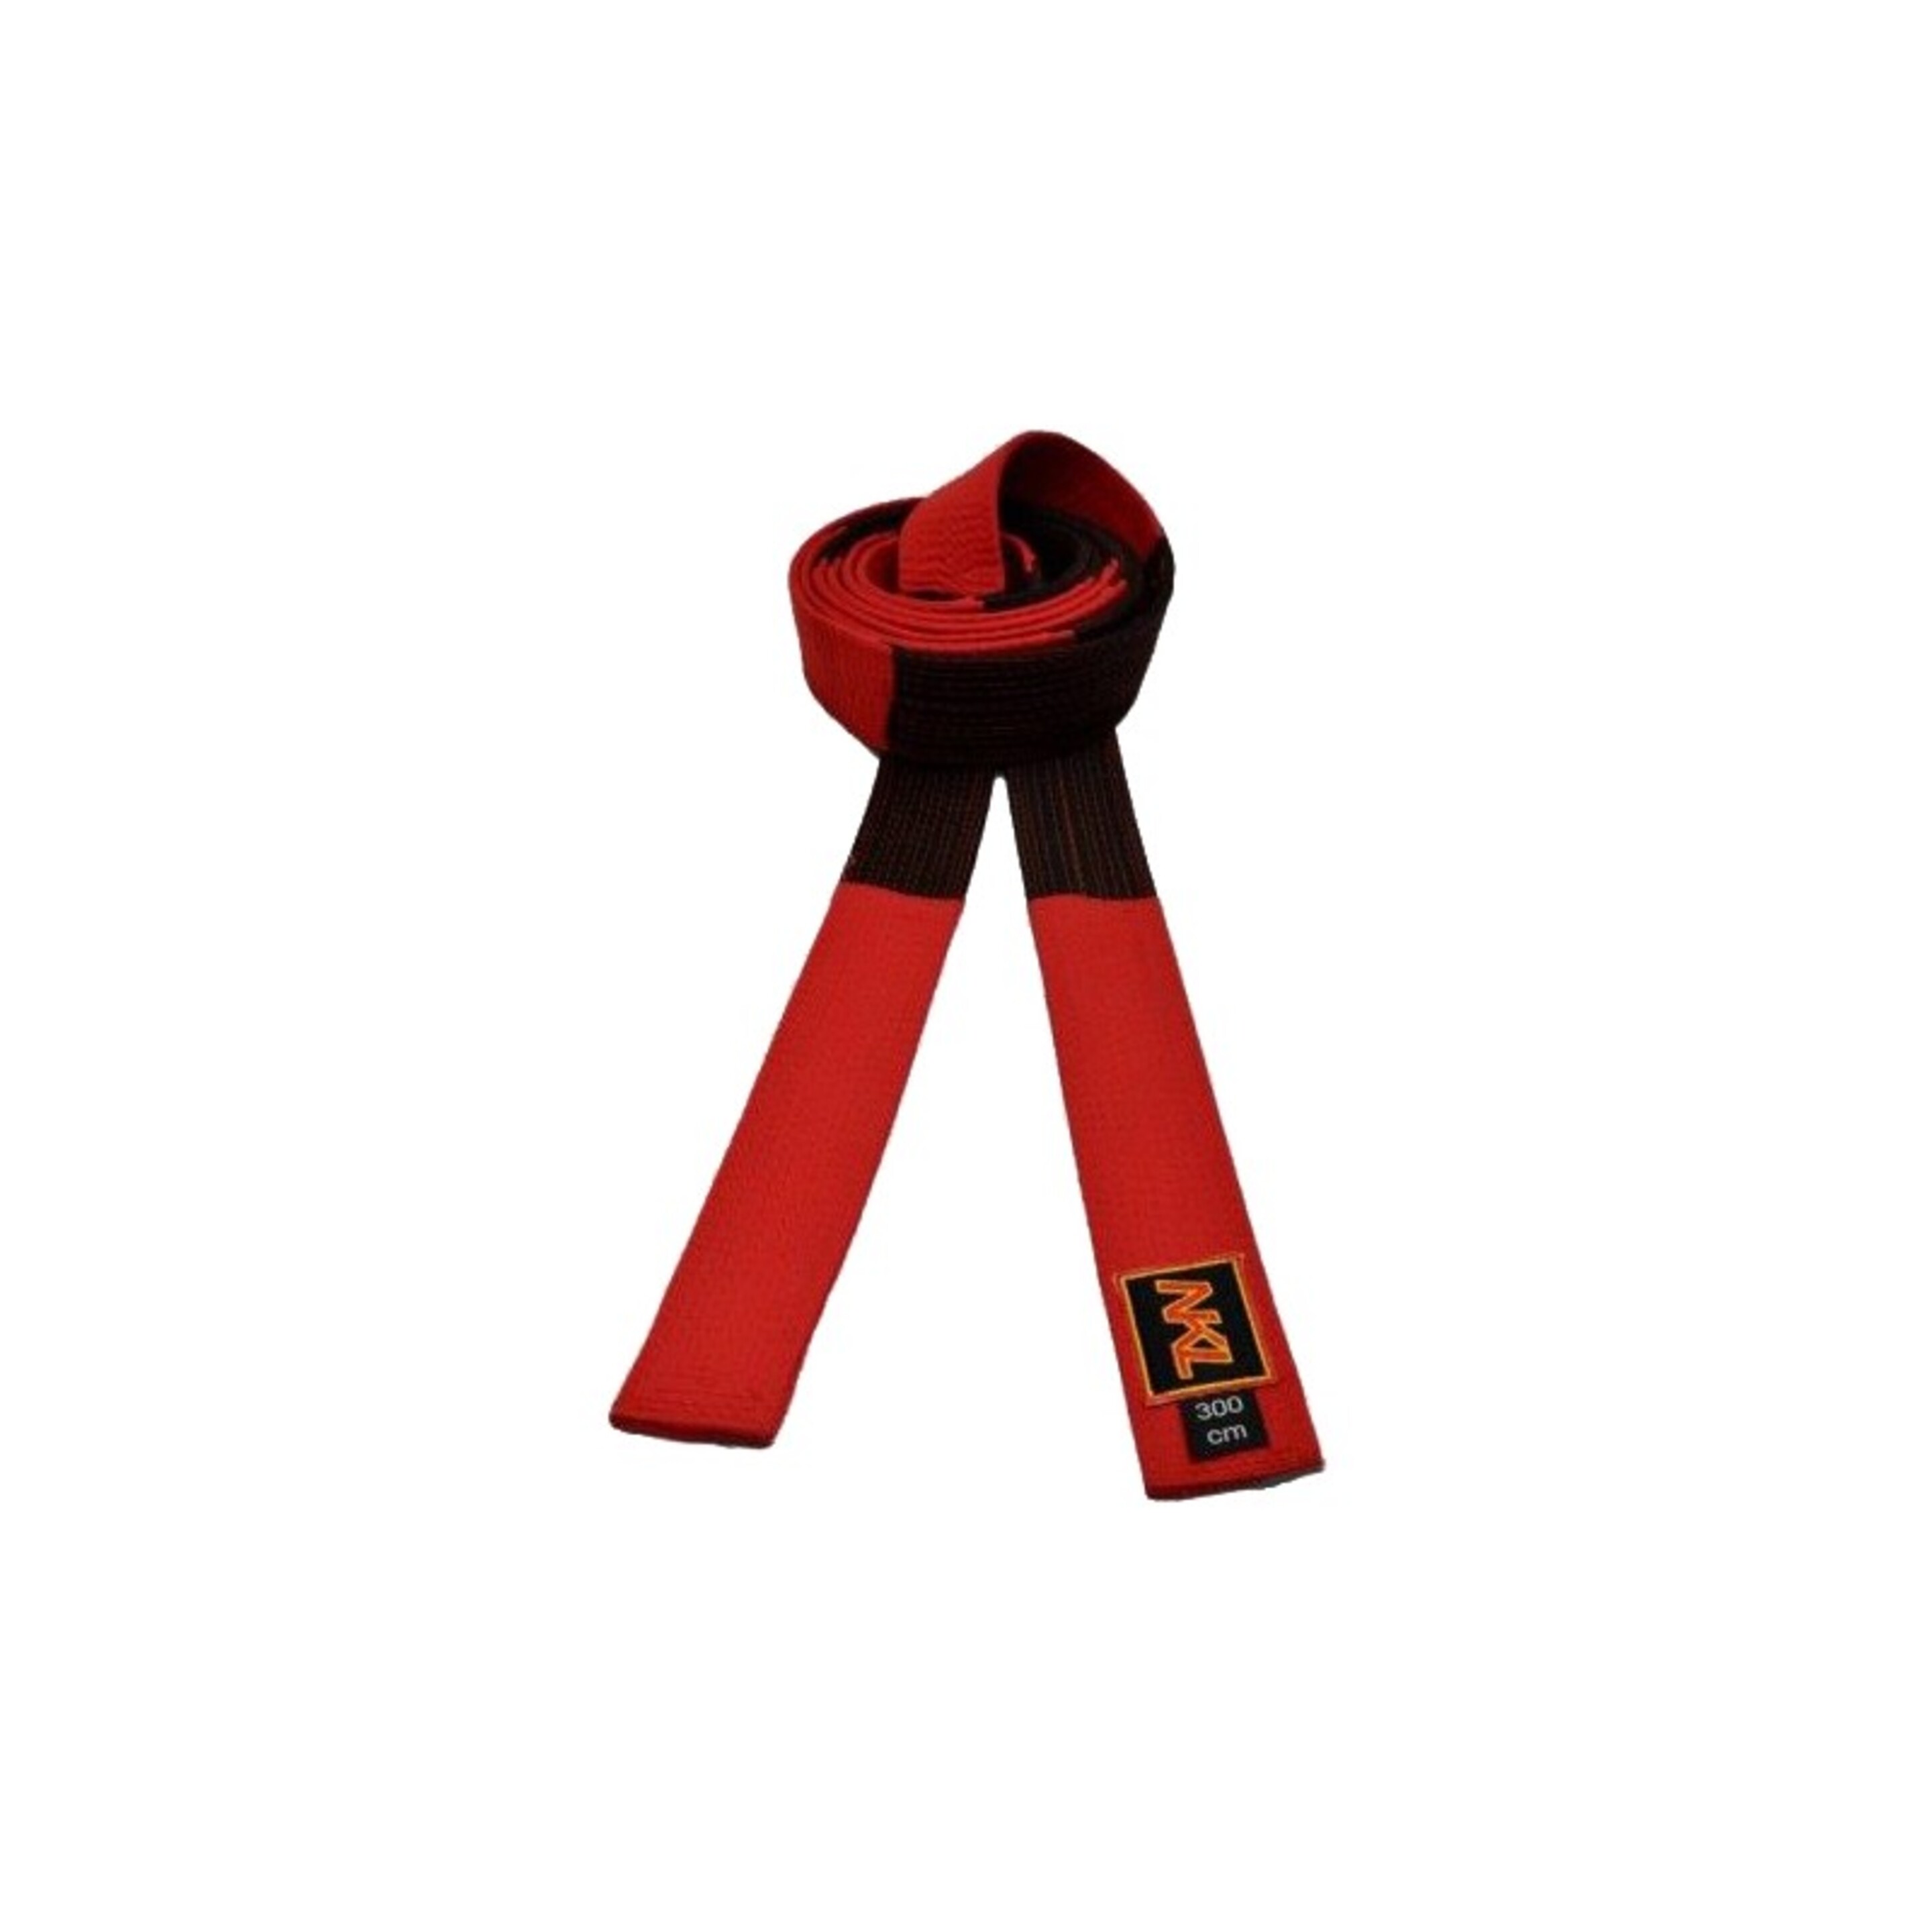 Cinturón Nkl Algodón "5º Dan" - negro-rojo - 